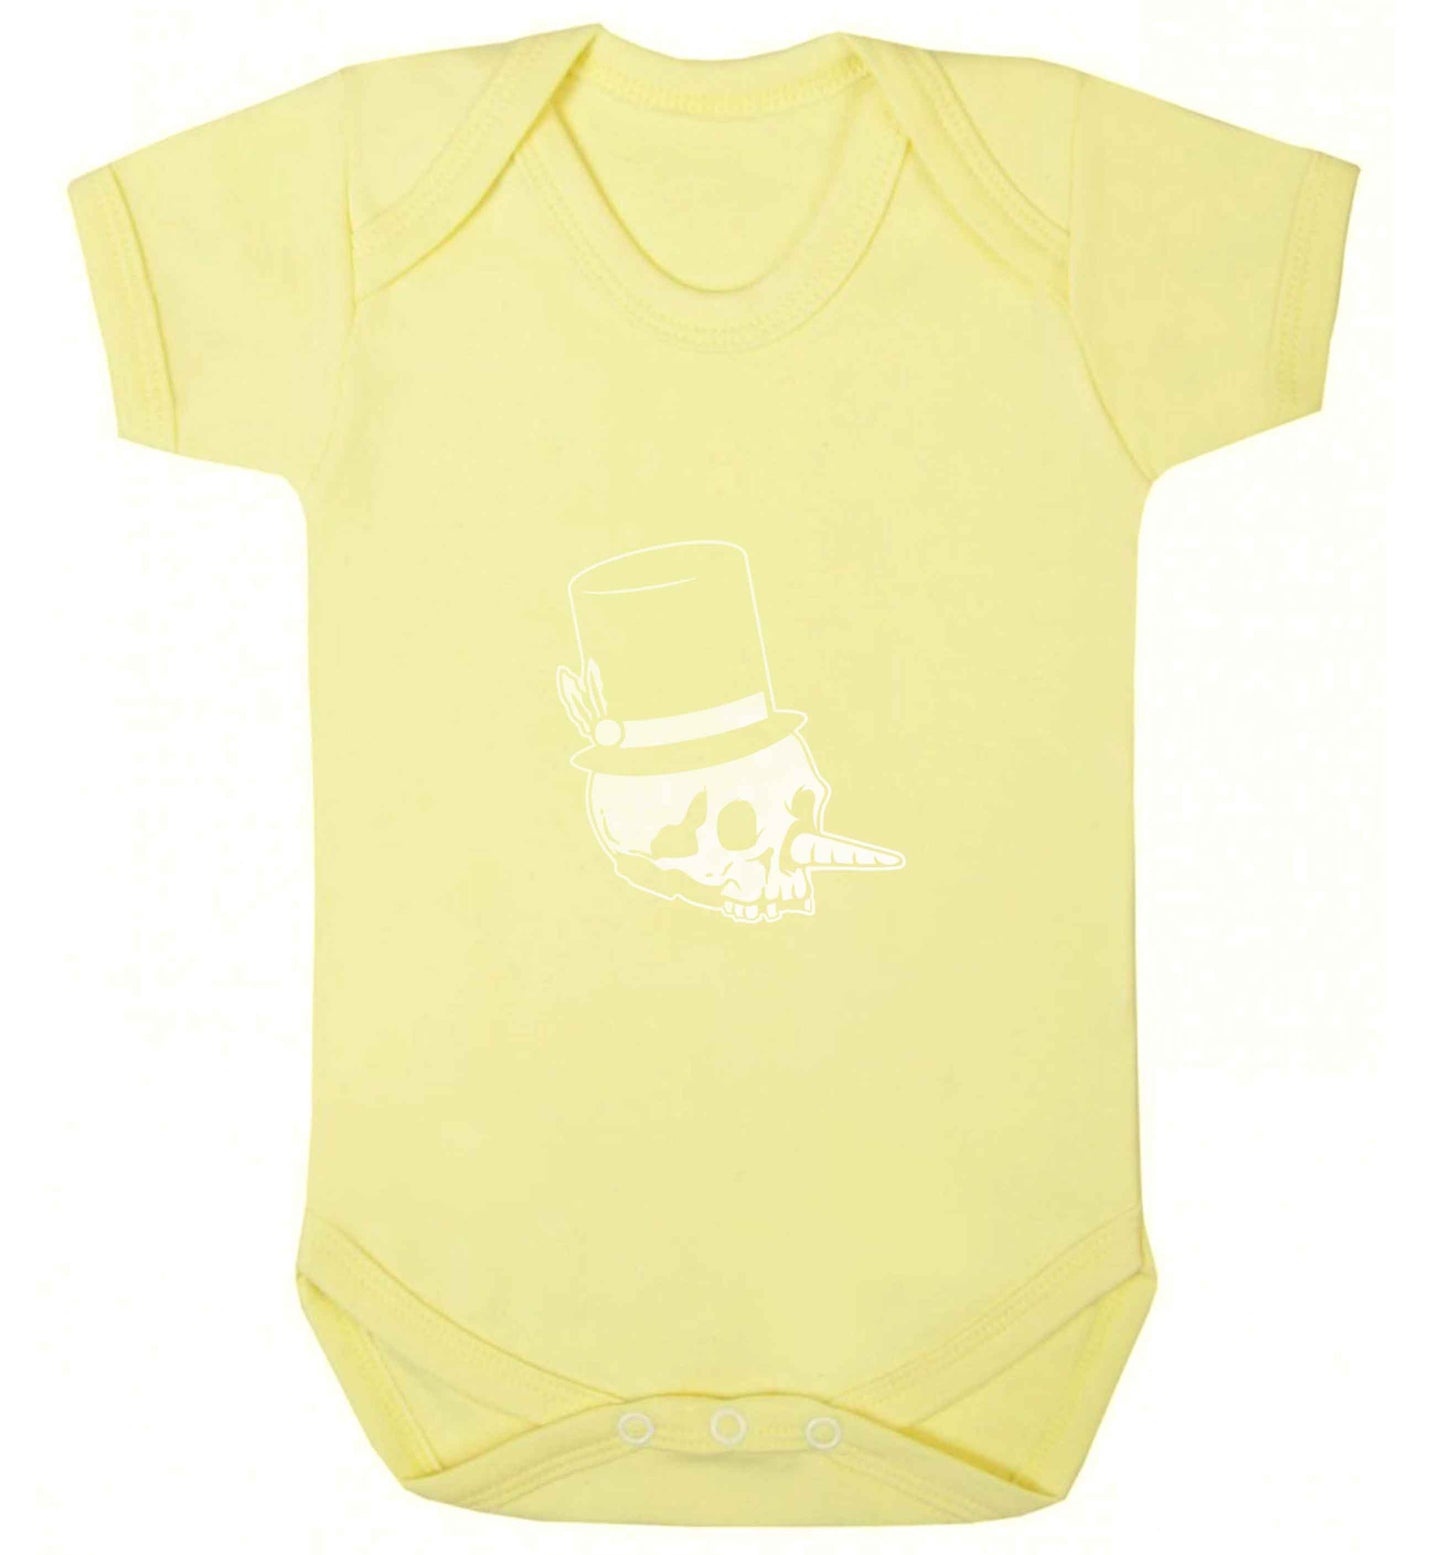 Snowman punk baby vest pale yellow 18-24 months